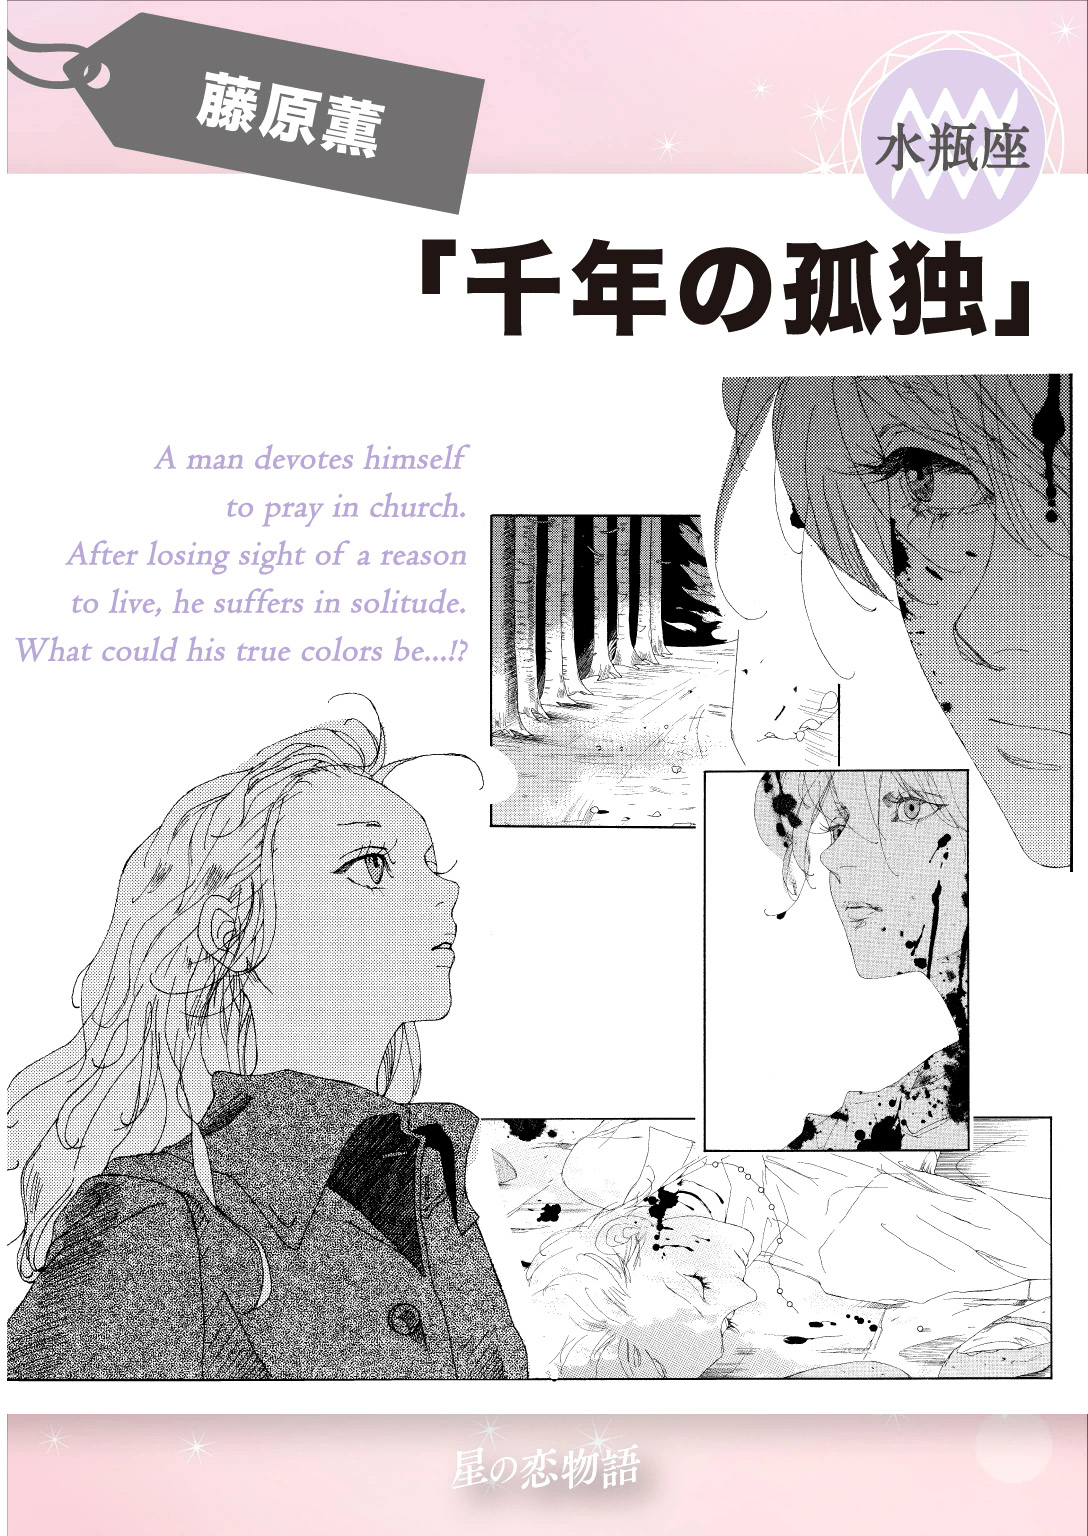 Hoshi no Koimonogatari Vol. 1 Ch. 11 Millennium Loneliness (Sennen no Kodoku)